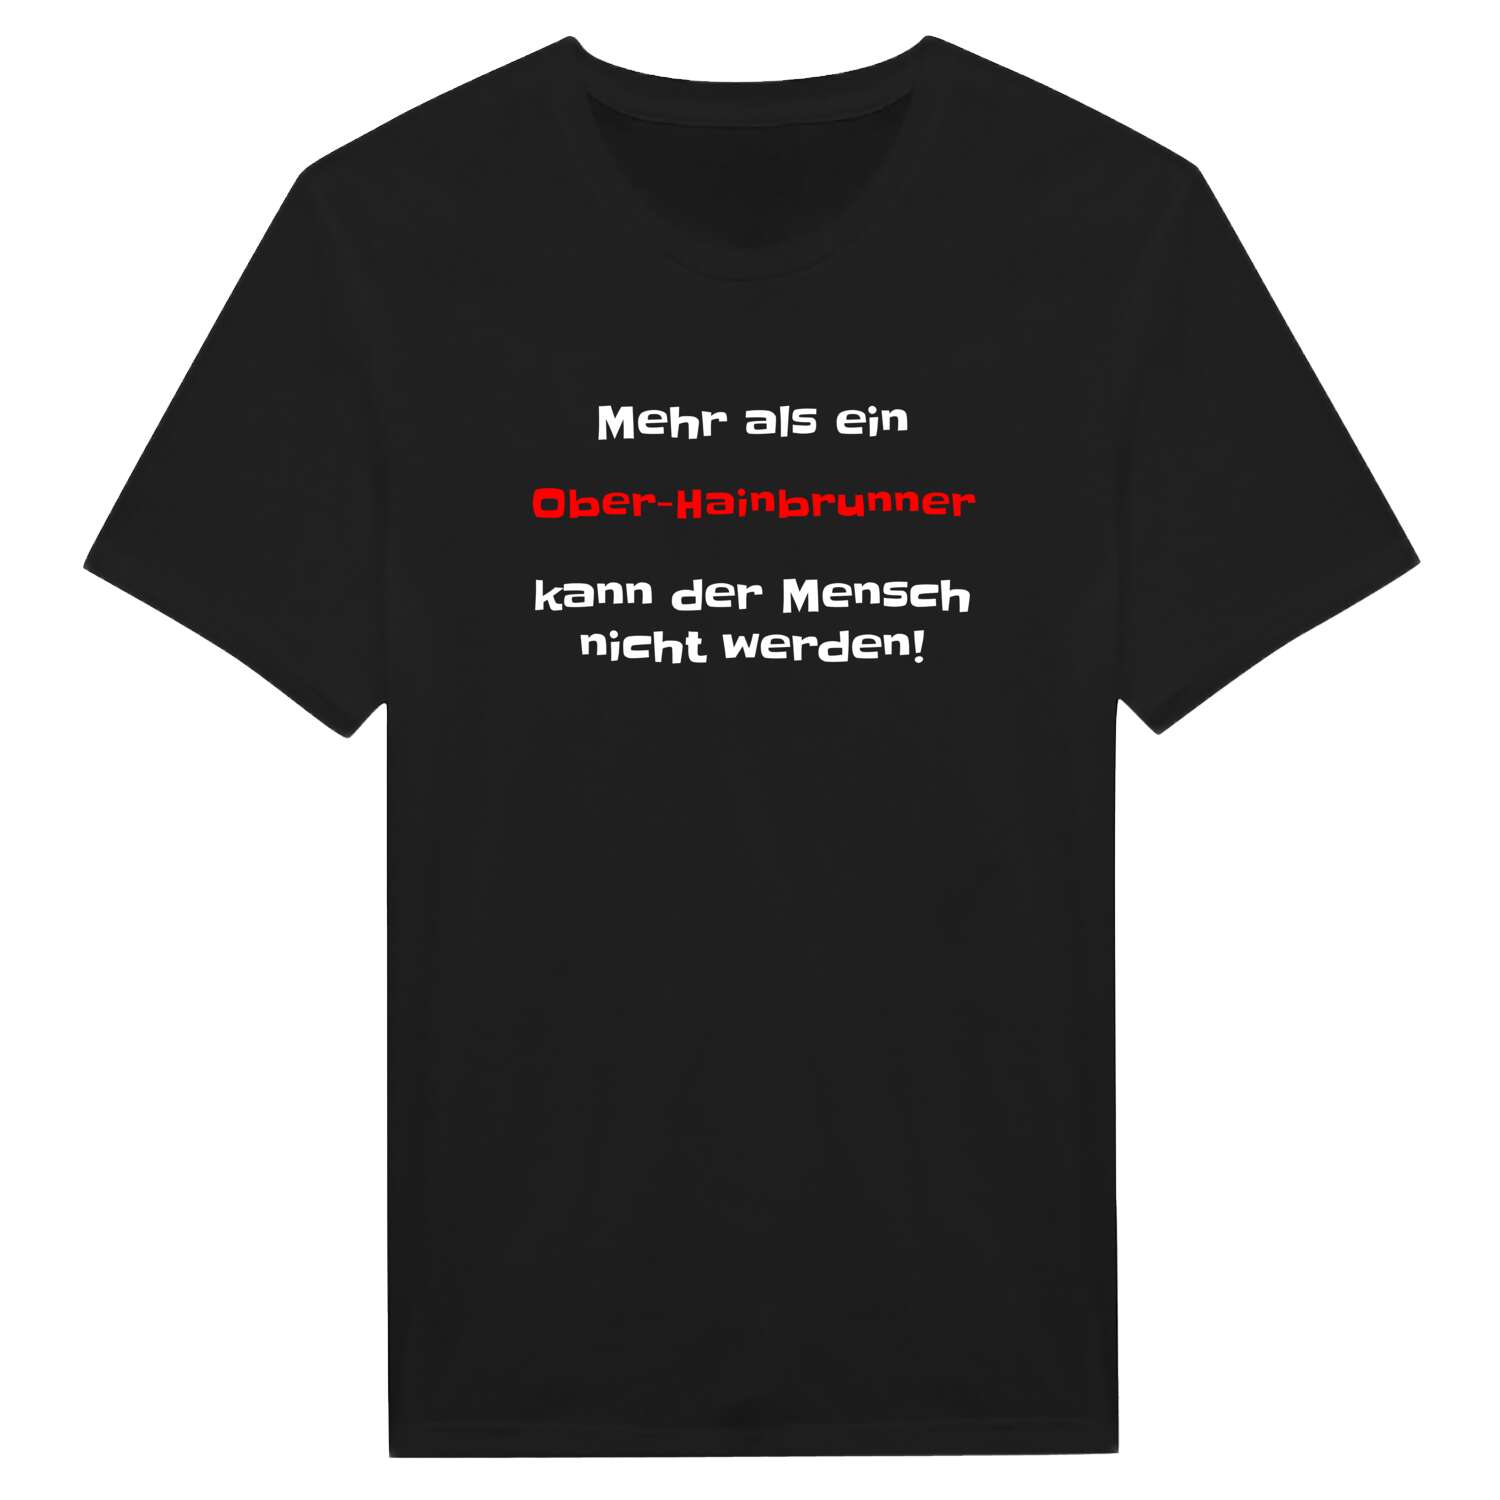 Ober-Hainbrunn T-Shirt »Mehr als ein«